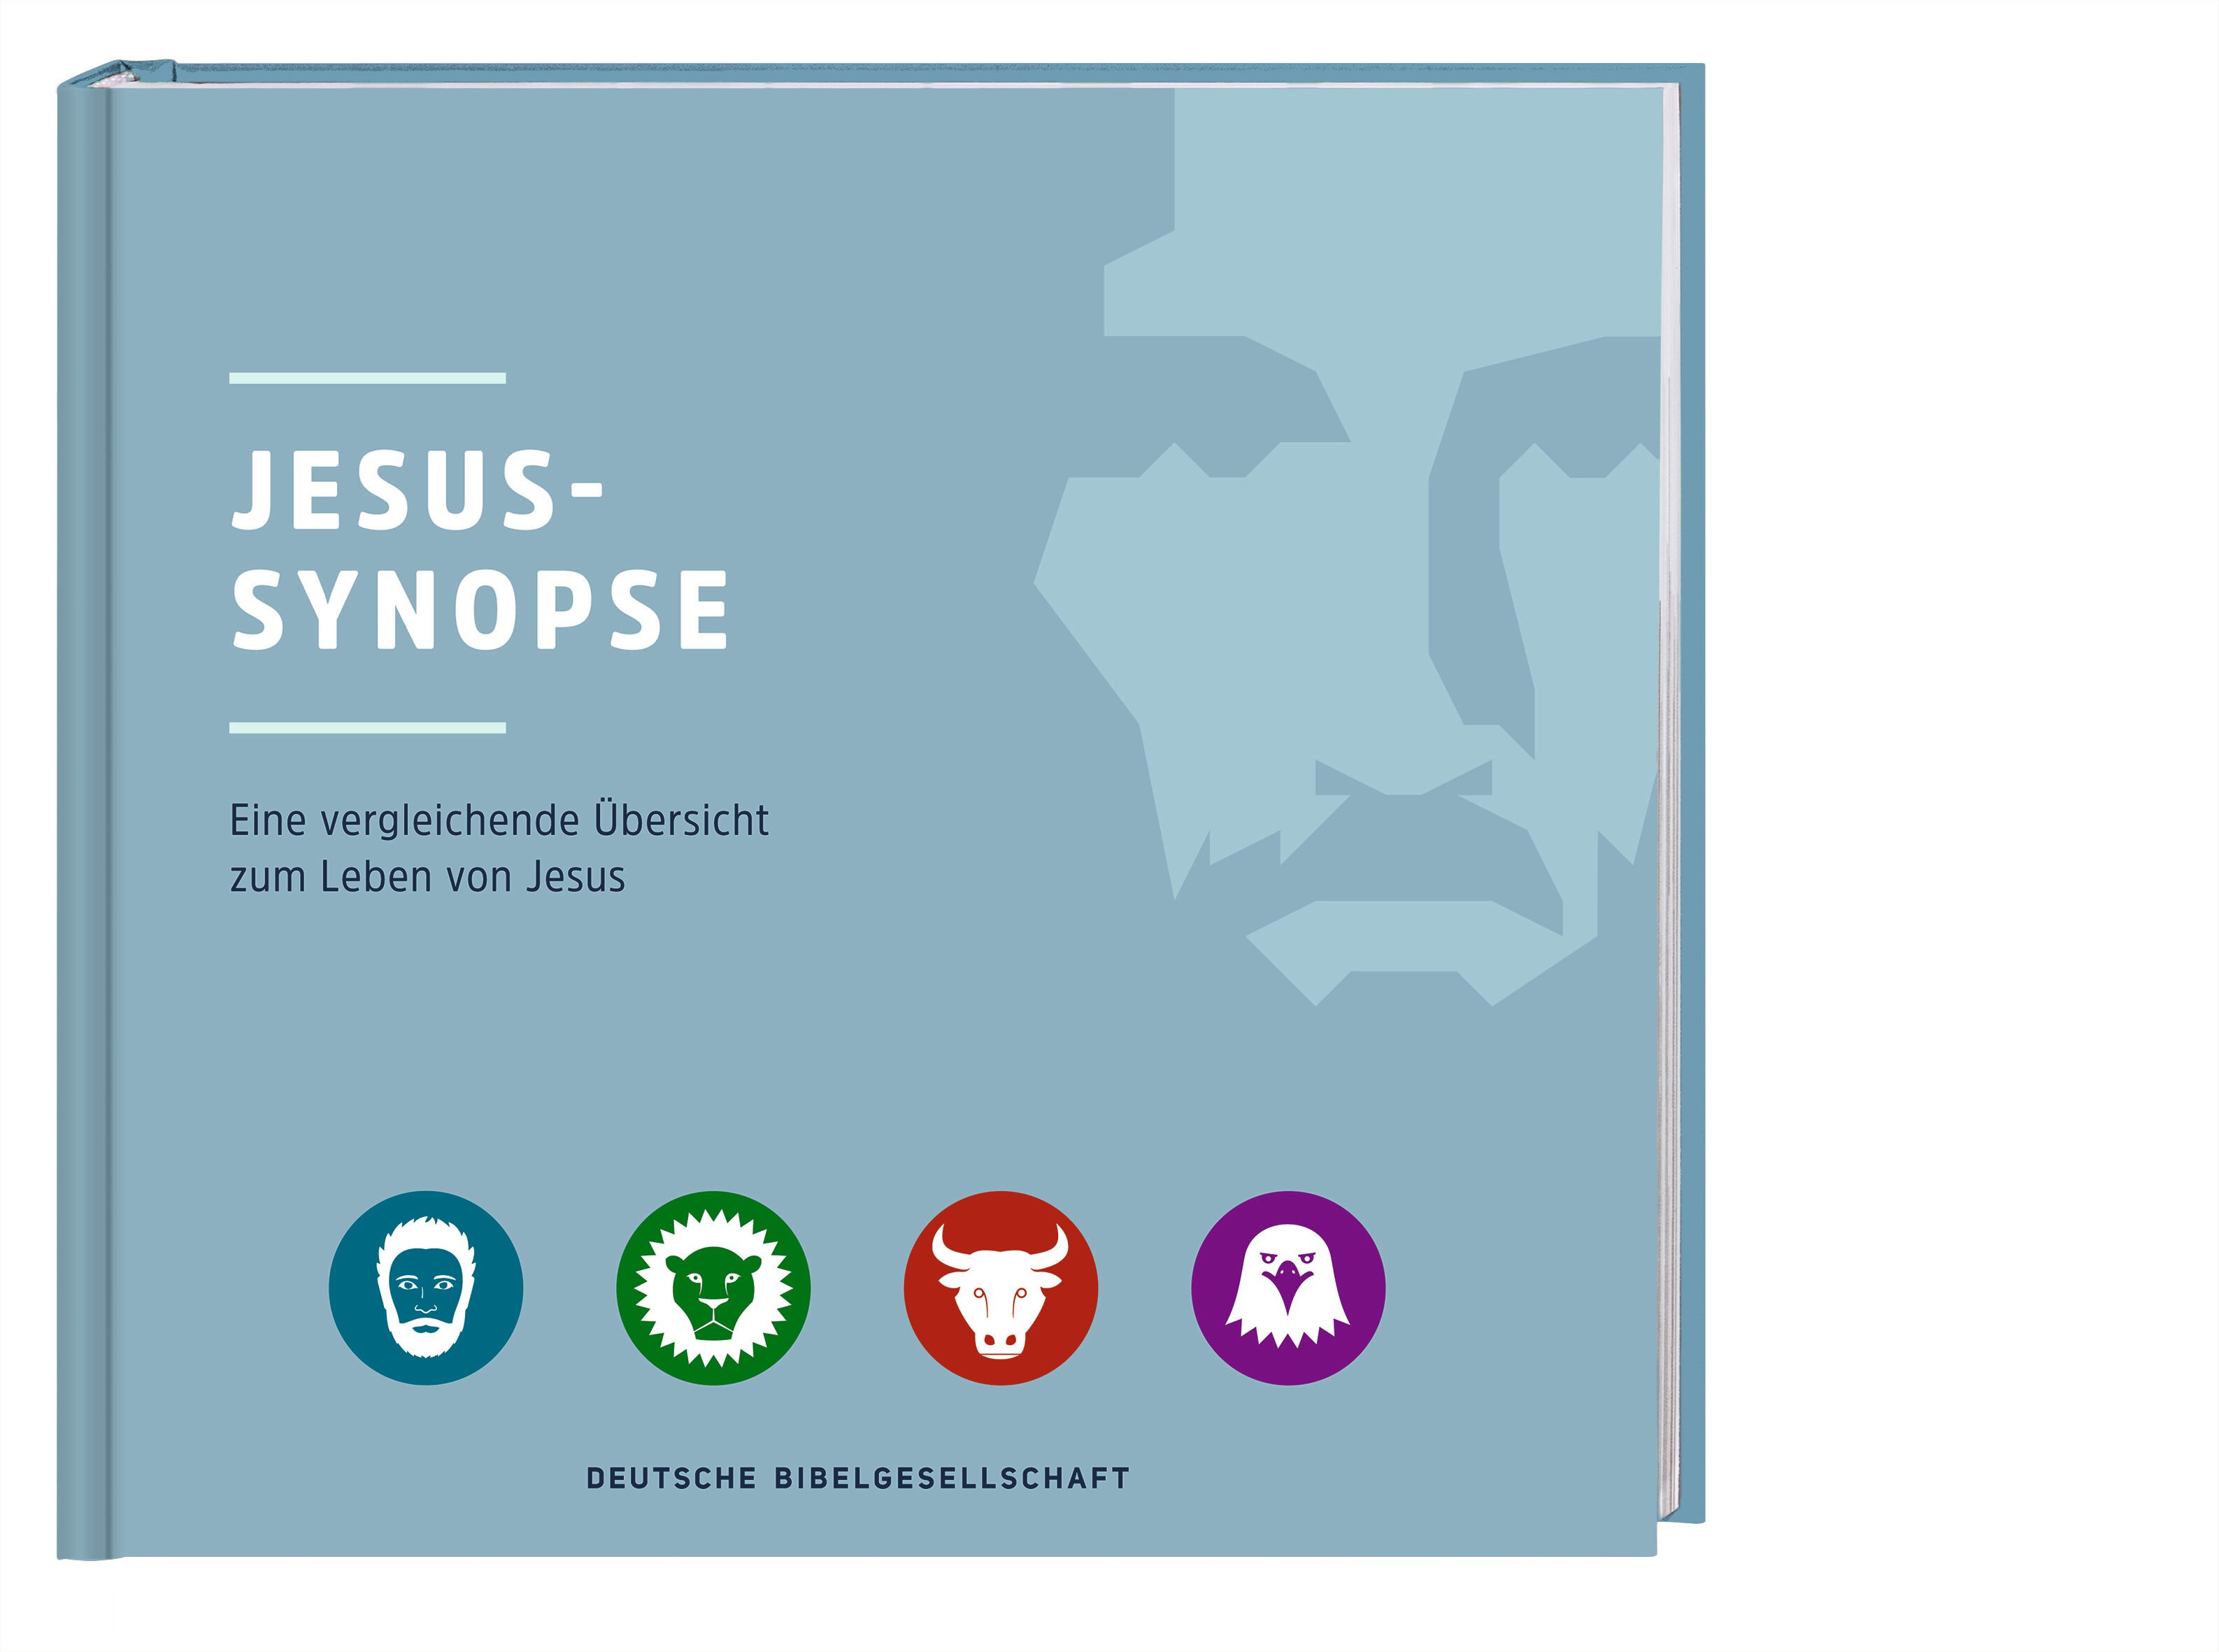 Jesus-Synopse|Eine vergleichenende Übersicht zum Leben von Jesus